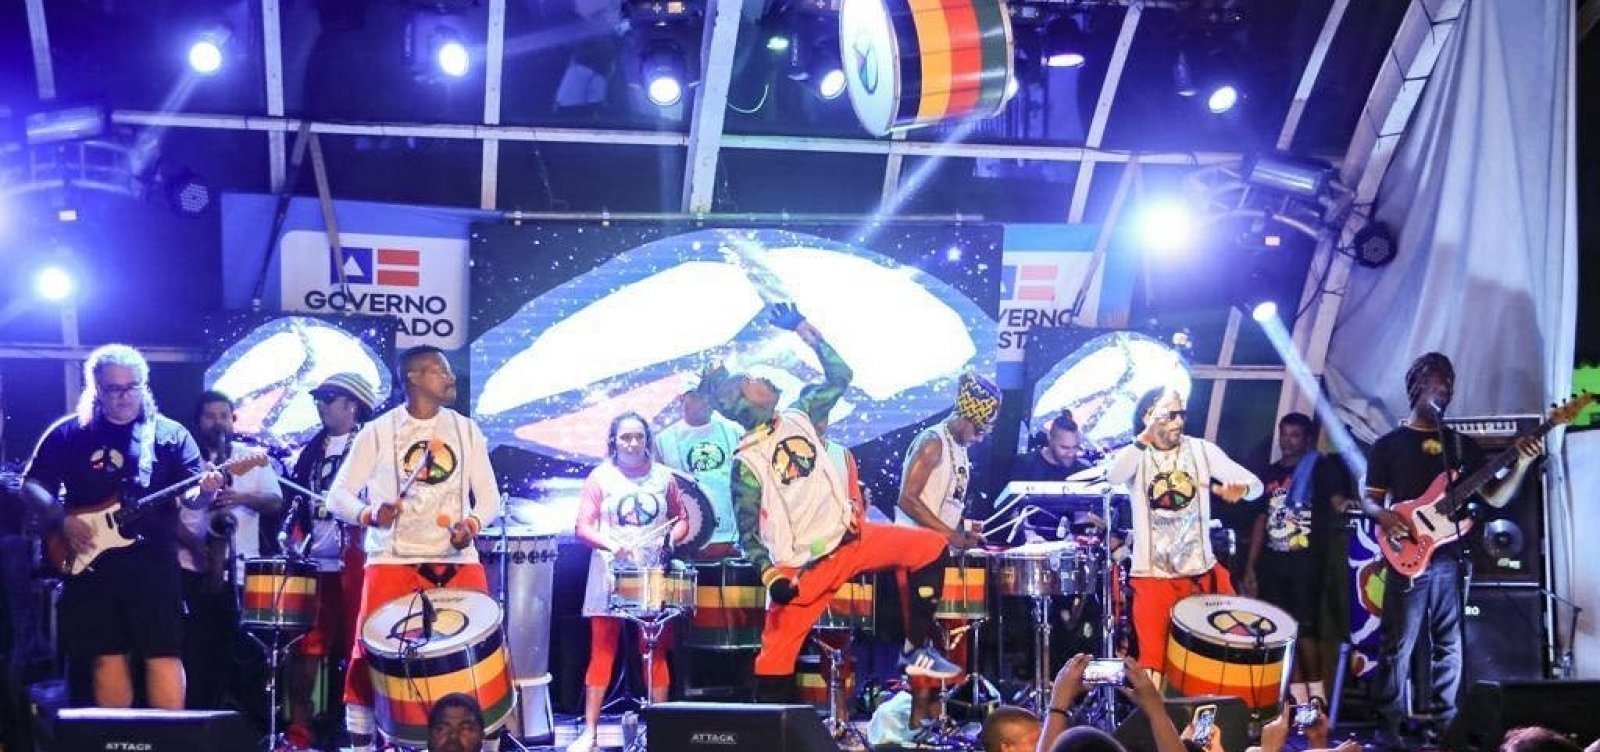 Após recurso, Olodum receberá quase R$ 300 mil do governo para Carnaval